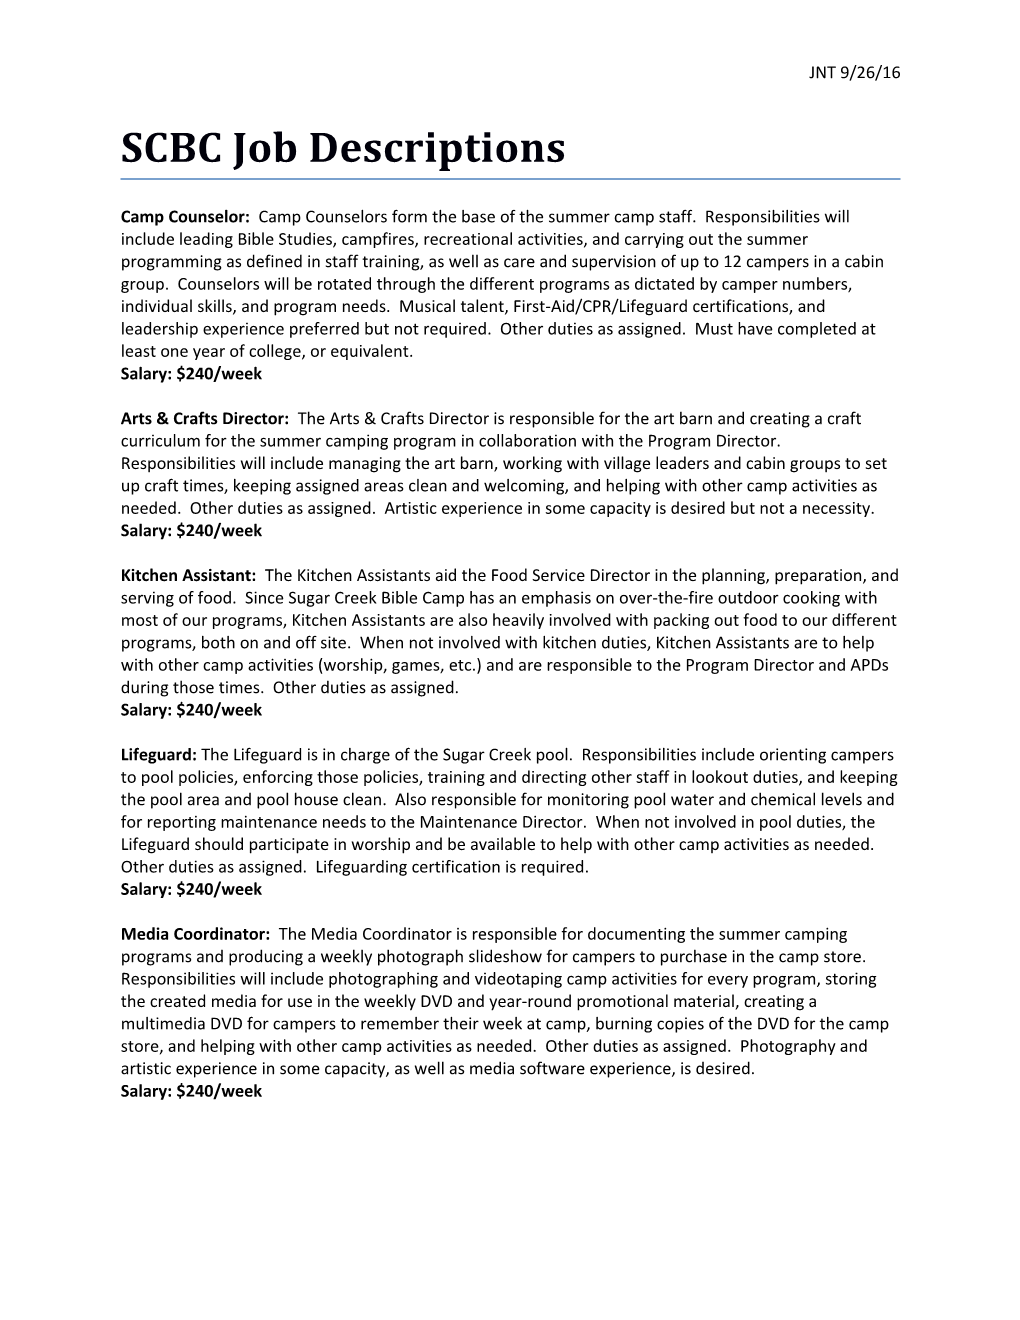 SCBC Job Descriptions